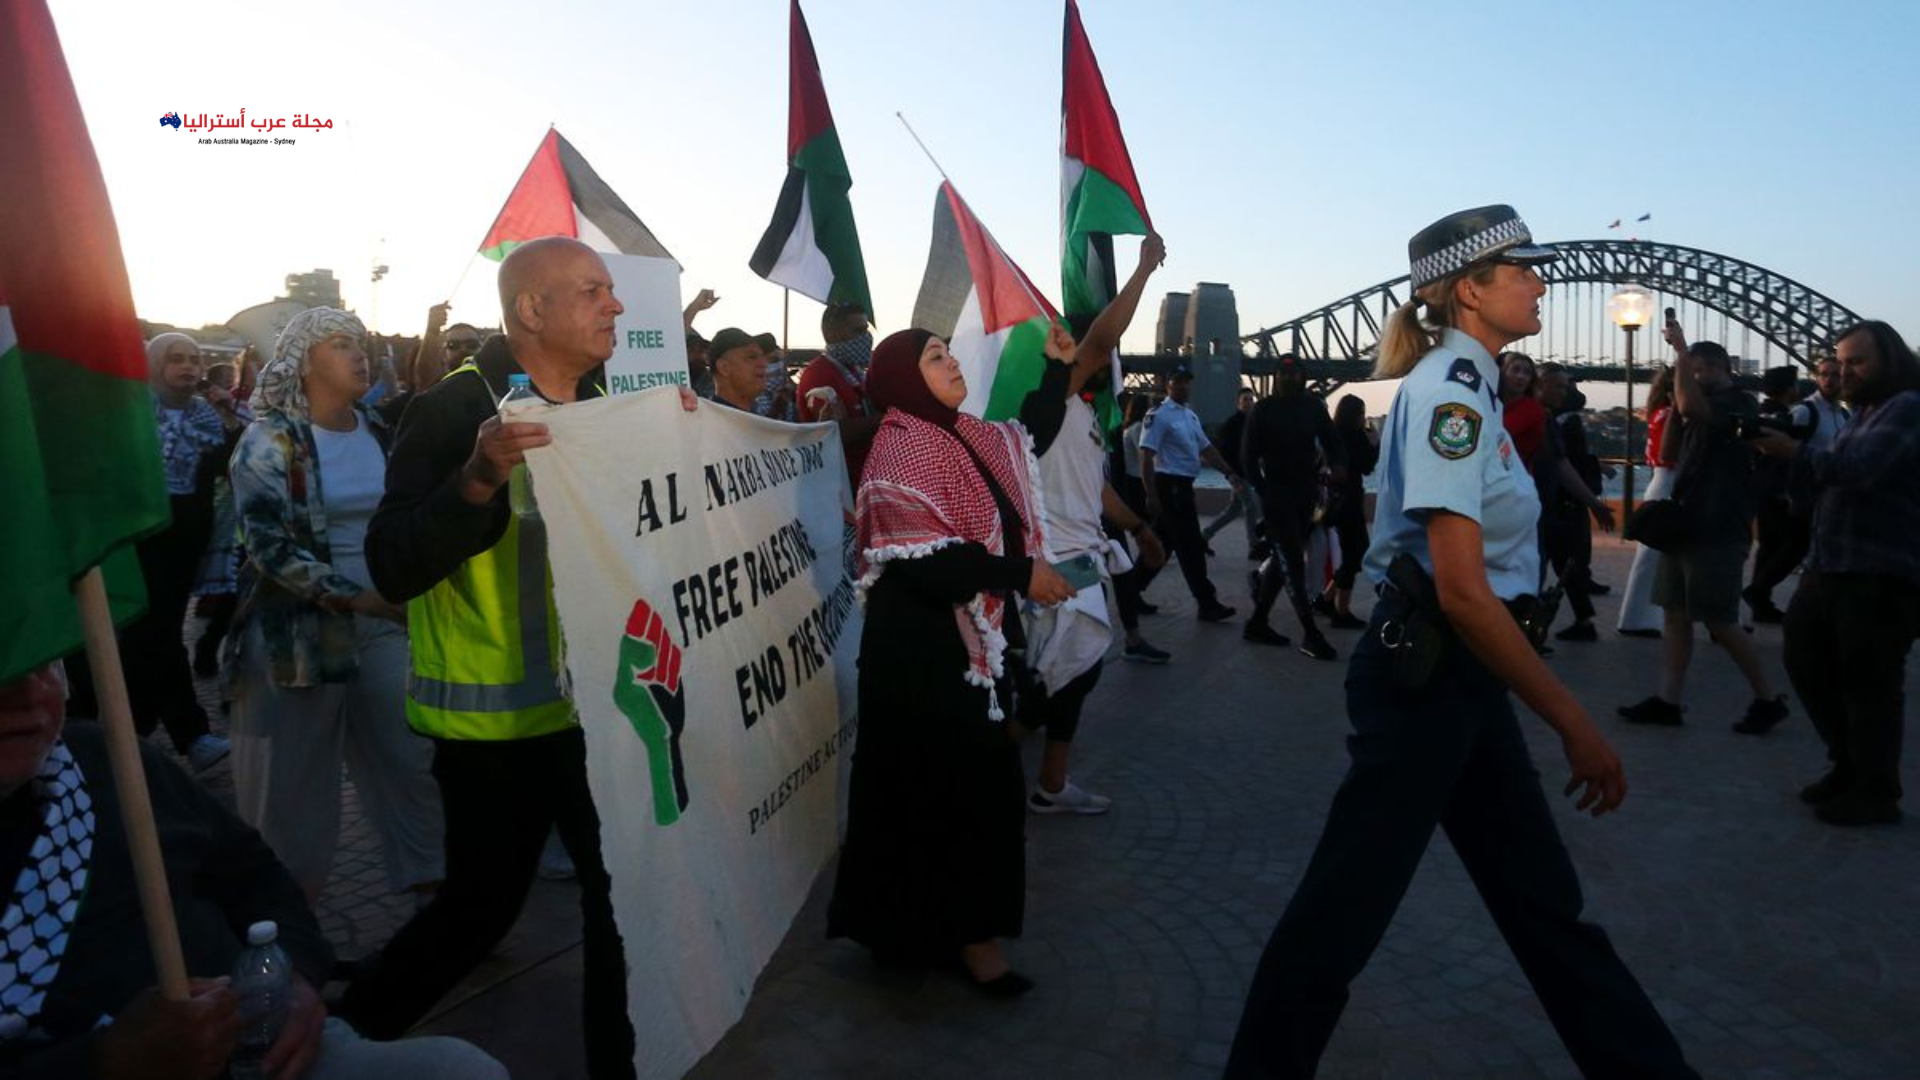 أستراليا الشرطة تحدد سلطات خاصة لمسيرة مؤيدة لفلسطين في سيدني